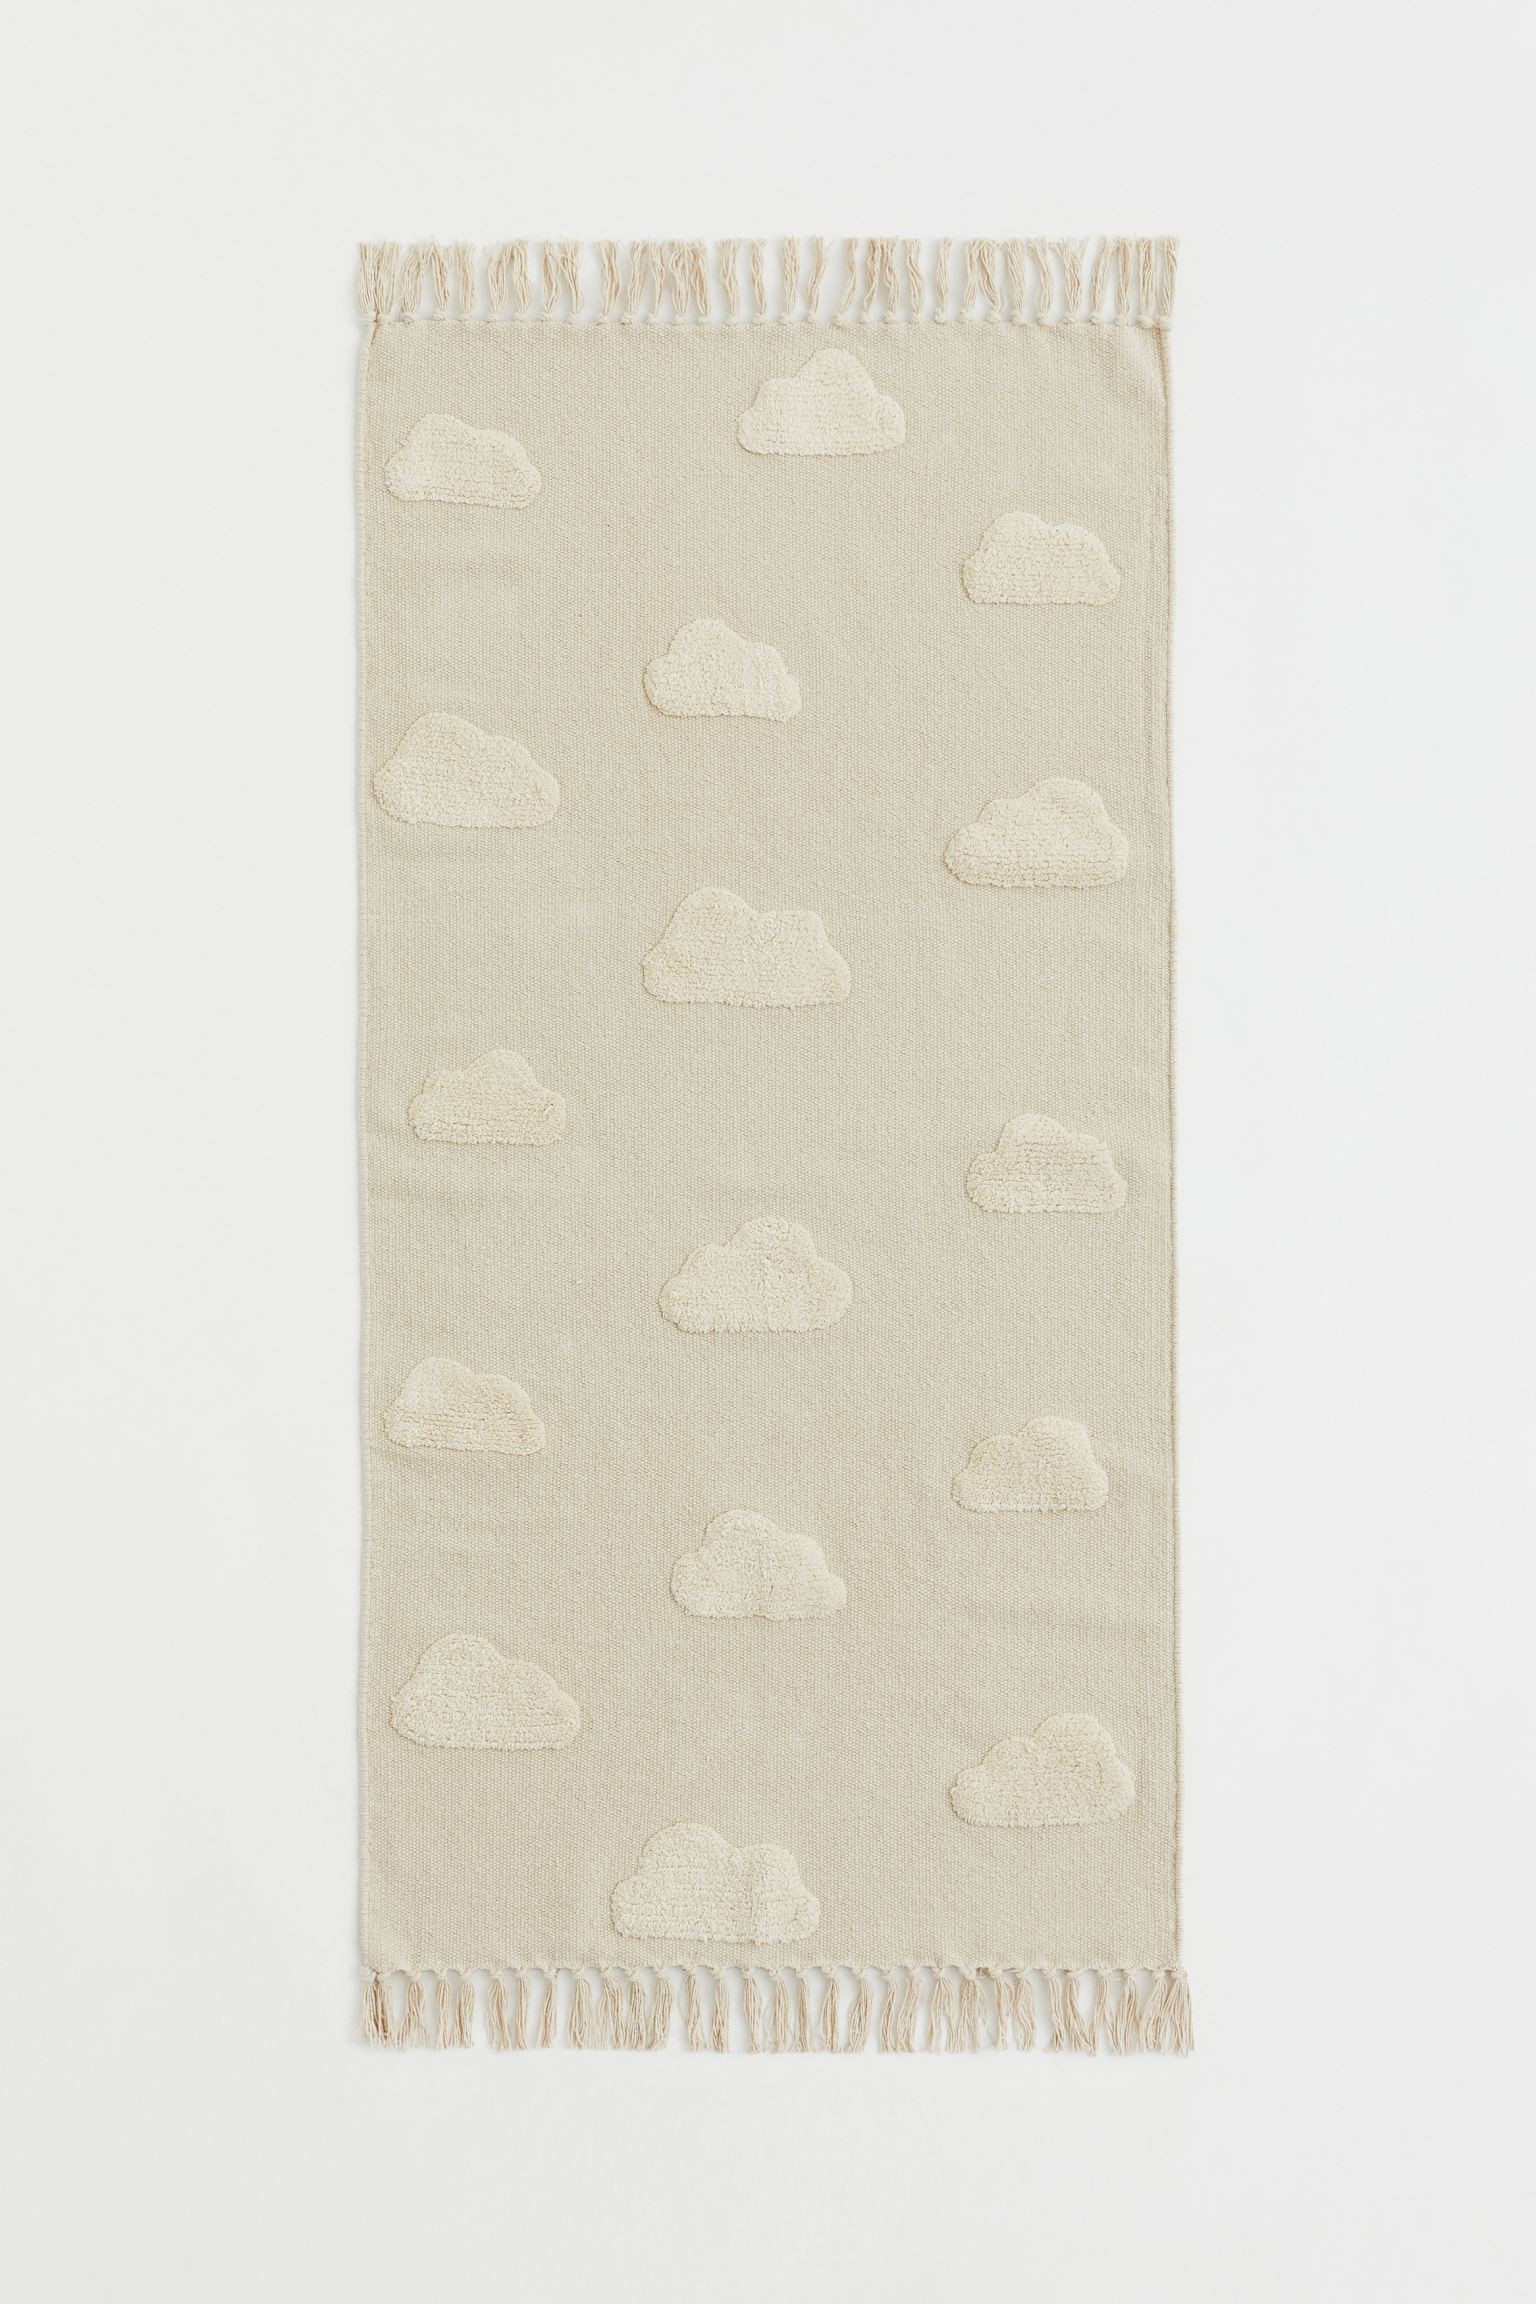 Хлопковый ковер с пушистым узором, Натуральный белый, 70x140